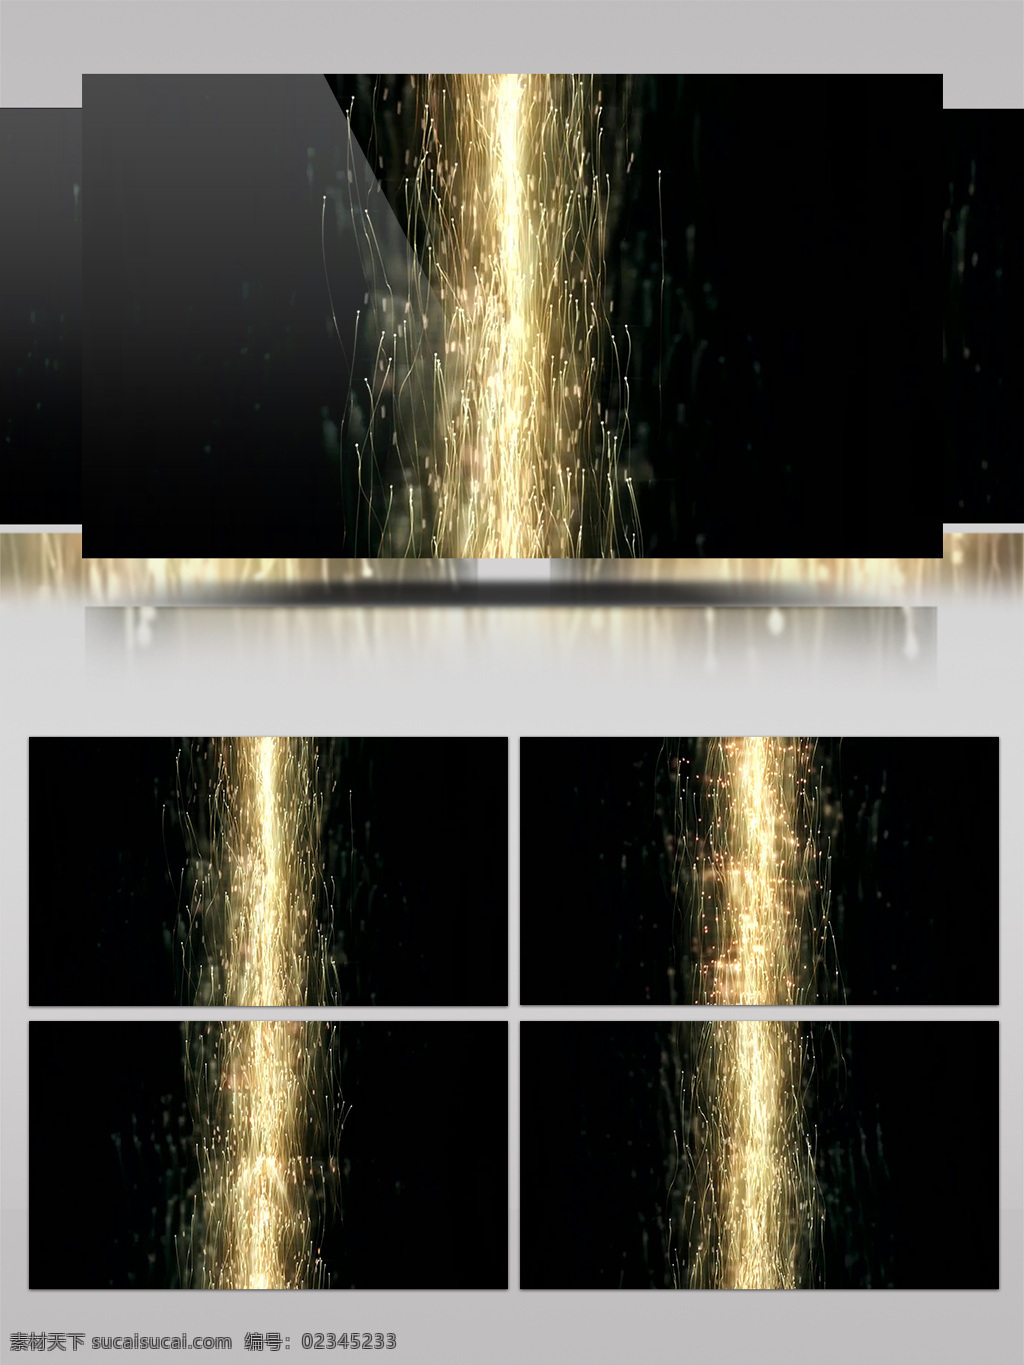 黄色 喷泉 烟花 视频 喷泉烟花 喷泉粒子 粒子花火 晚会背景 舞台特效灯光 光斑散射 视觉享受 3d视频素材 特效视频素材